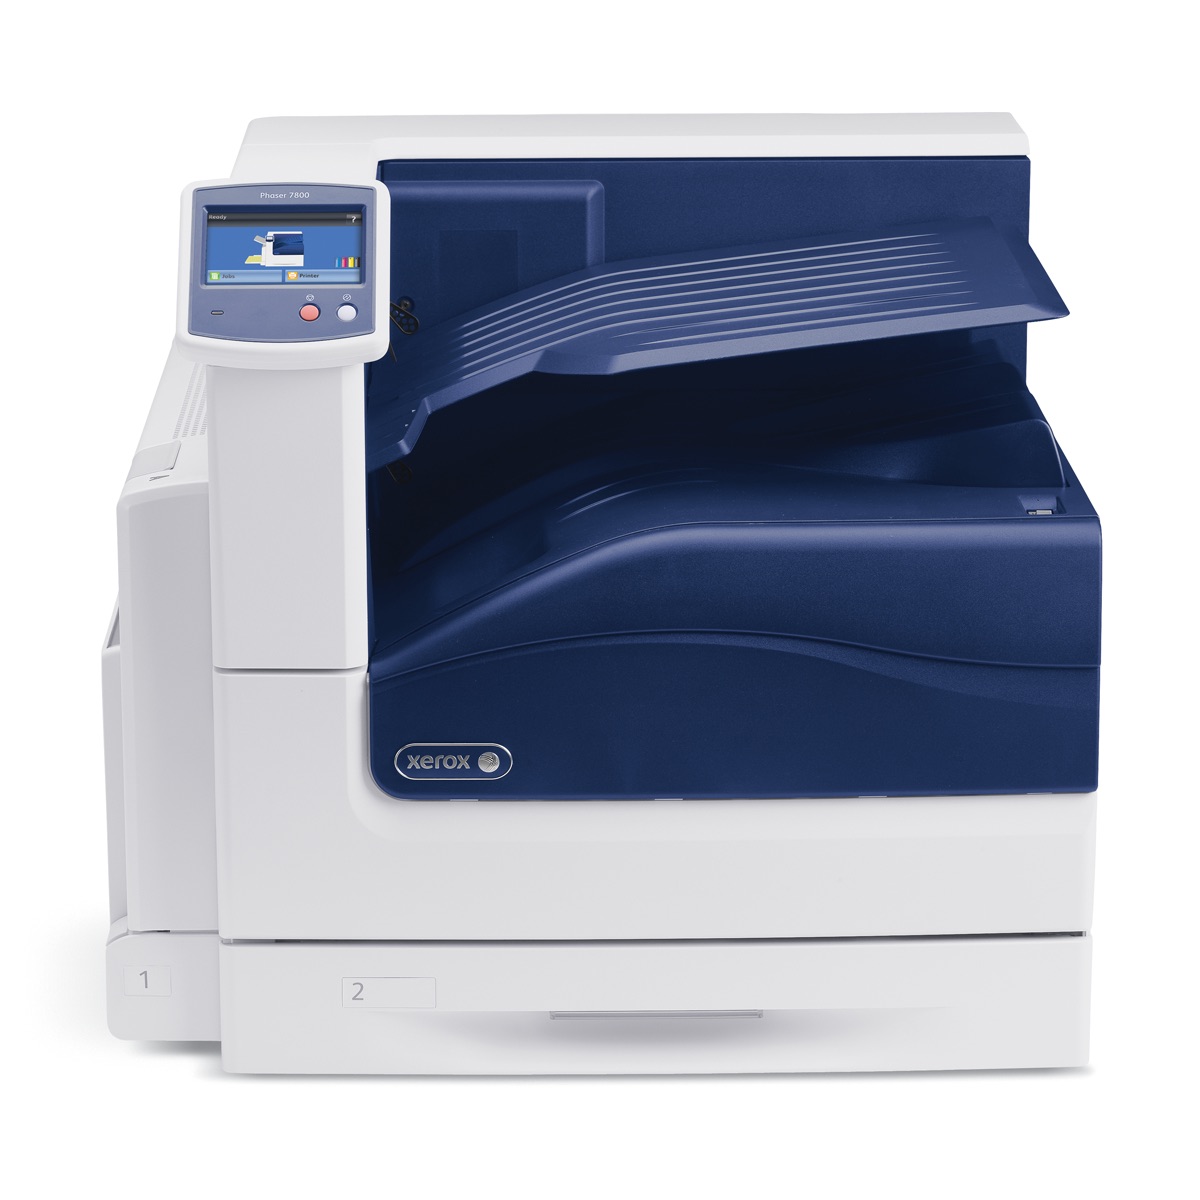 Xerox Printers:  The Xerox Phaser 7800 Printer